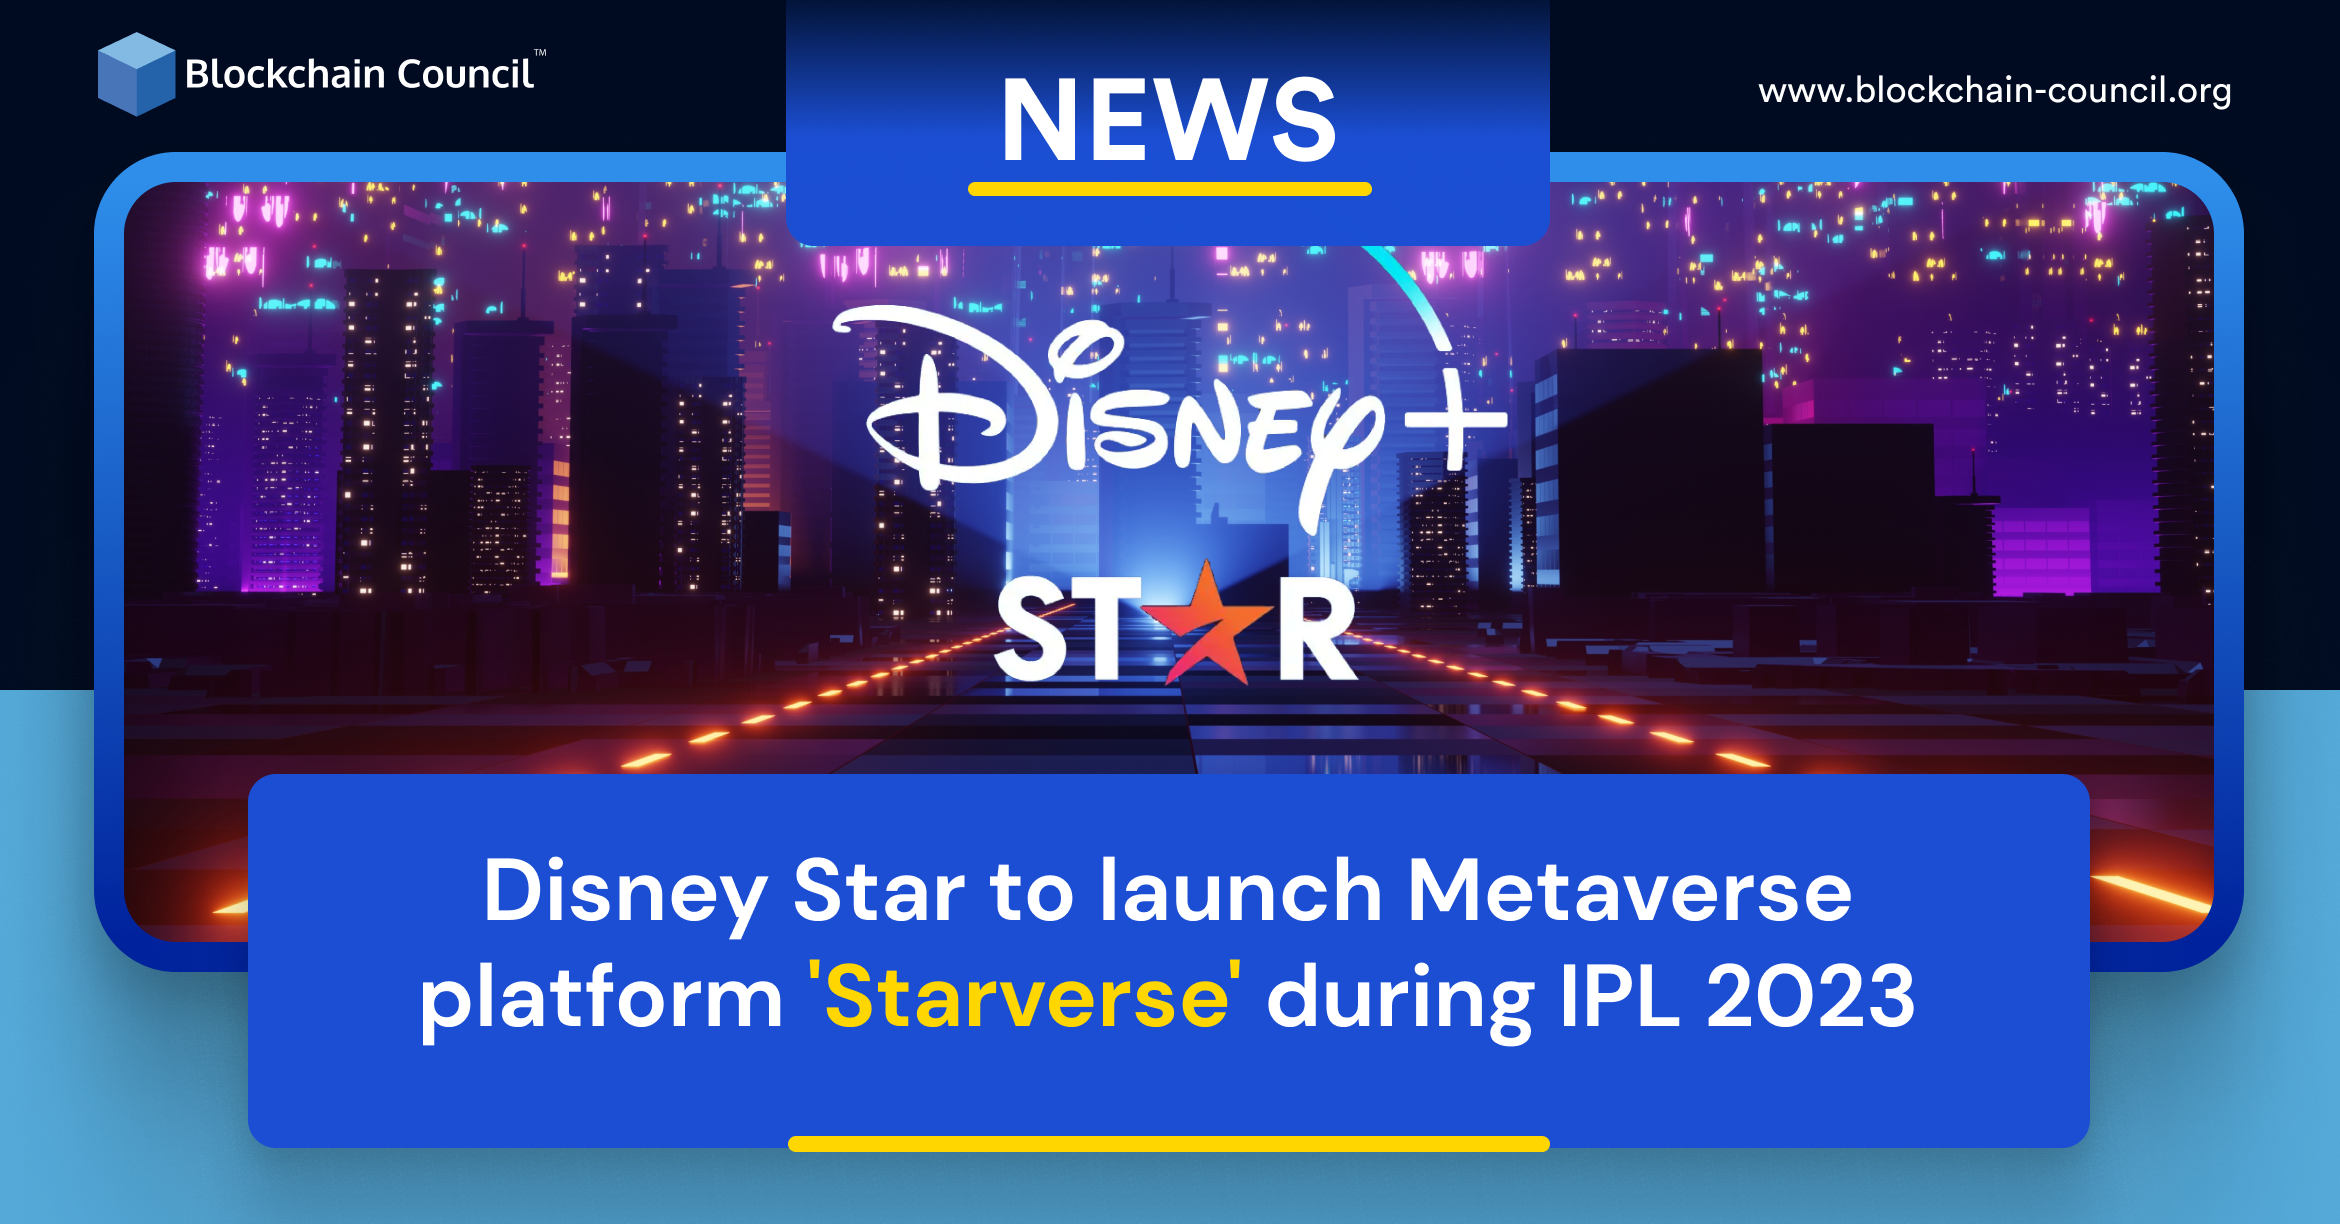 Disney Star to launch Metaverse platform 'Starverse' during IPL 2023